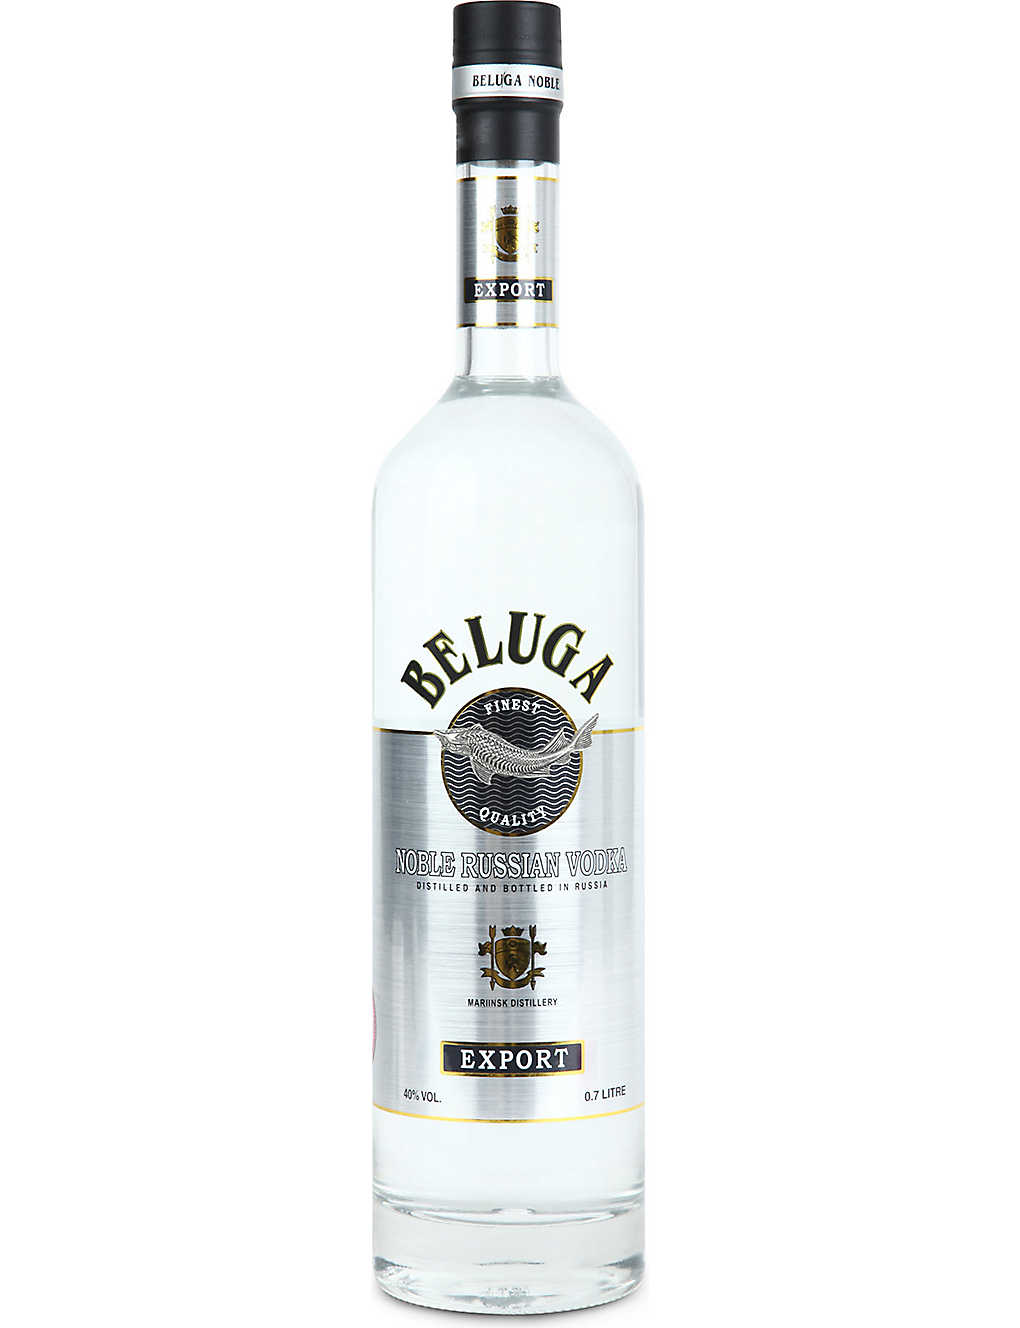 Rượu Vodka Beluga Nga nhập khẩu giá rẻ